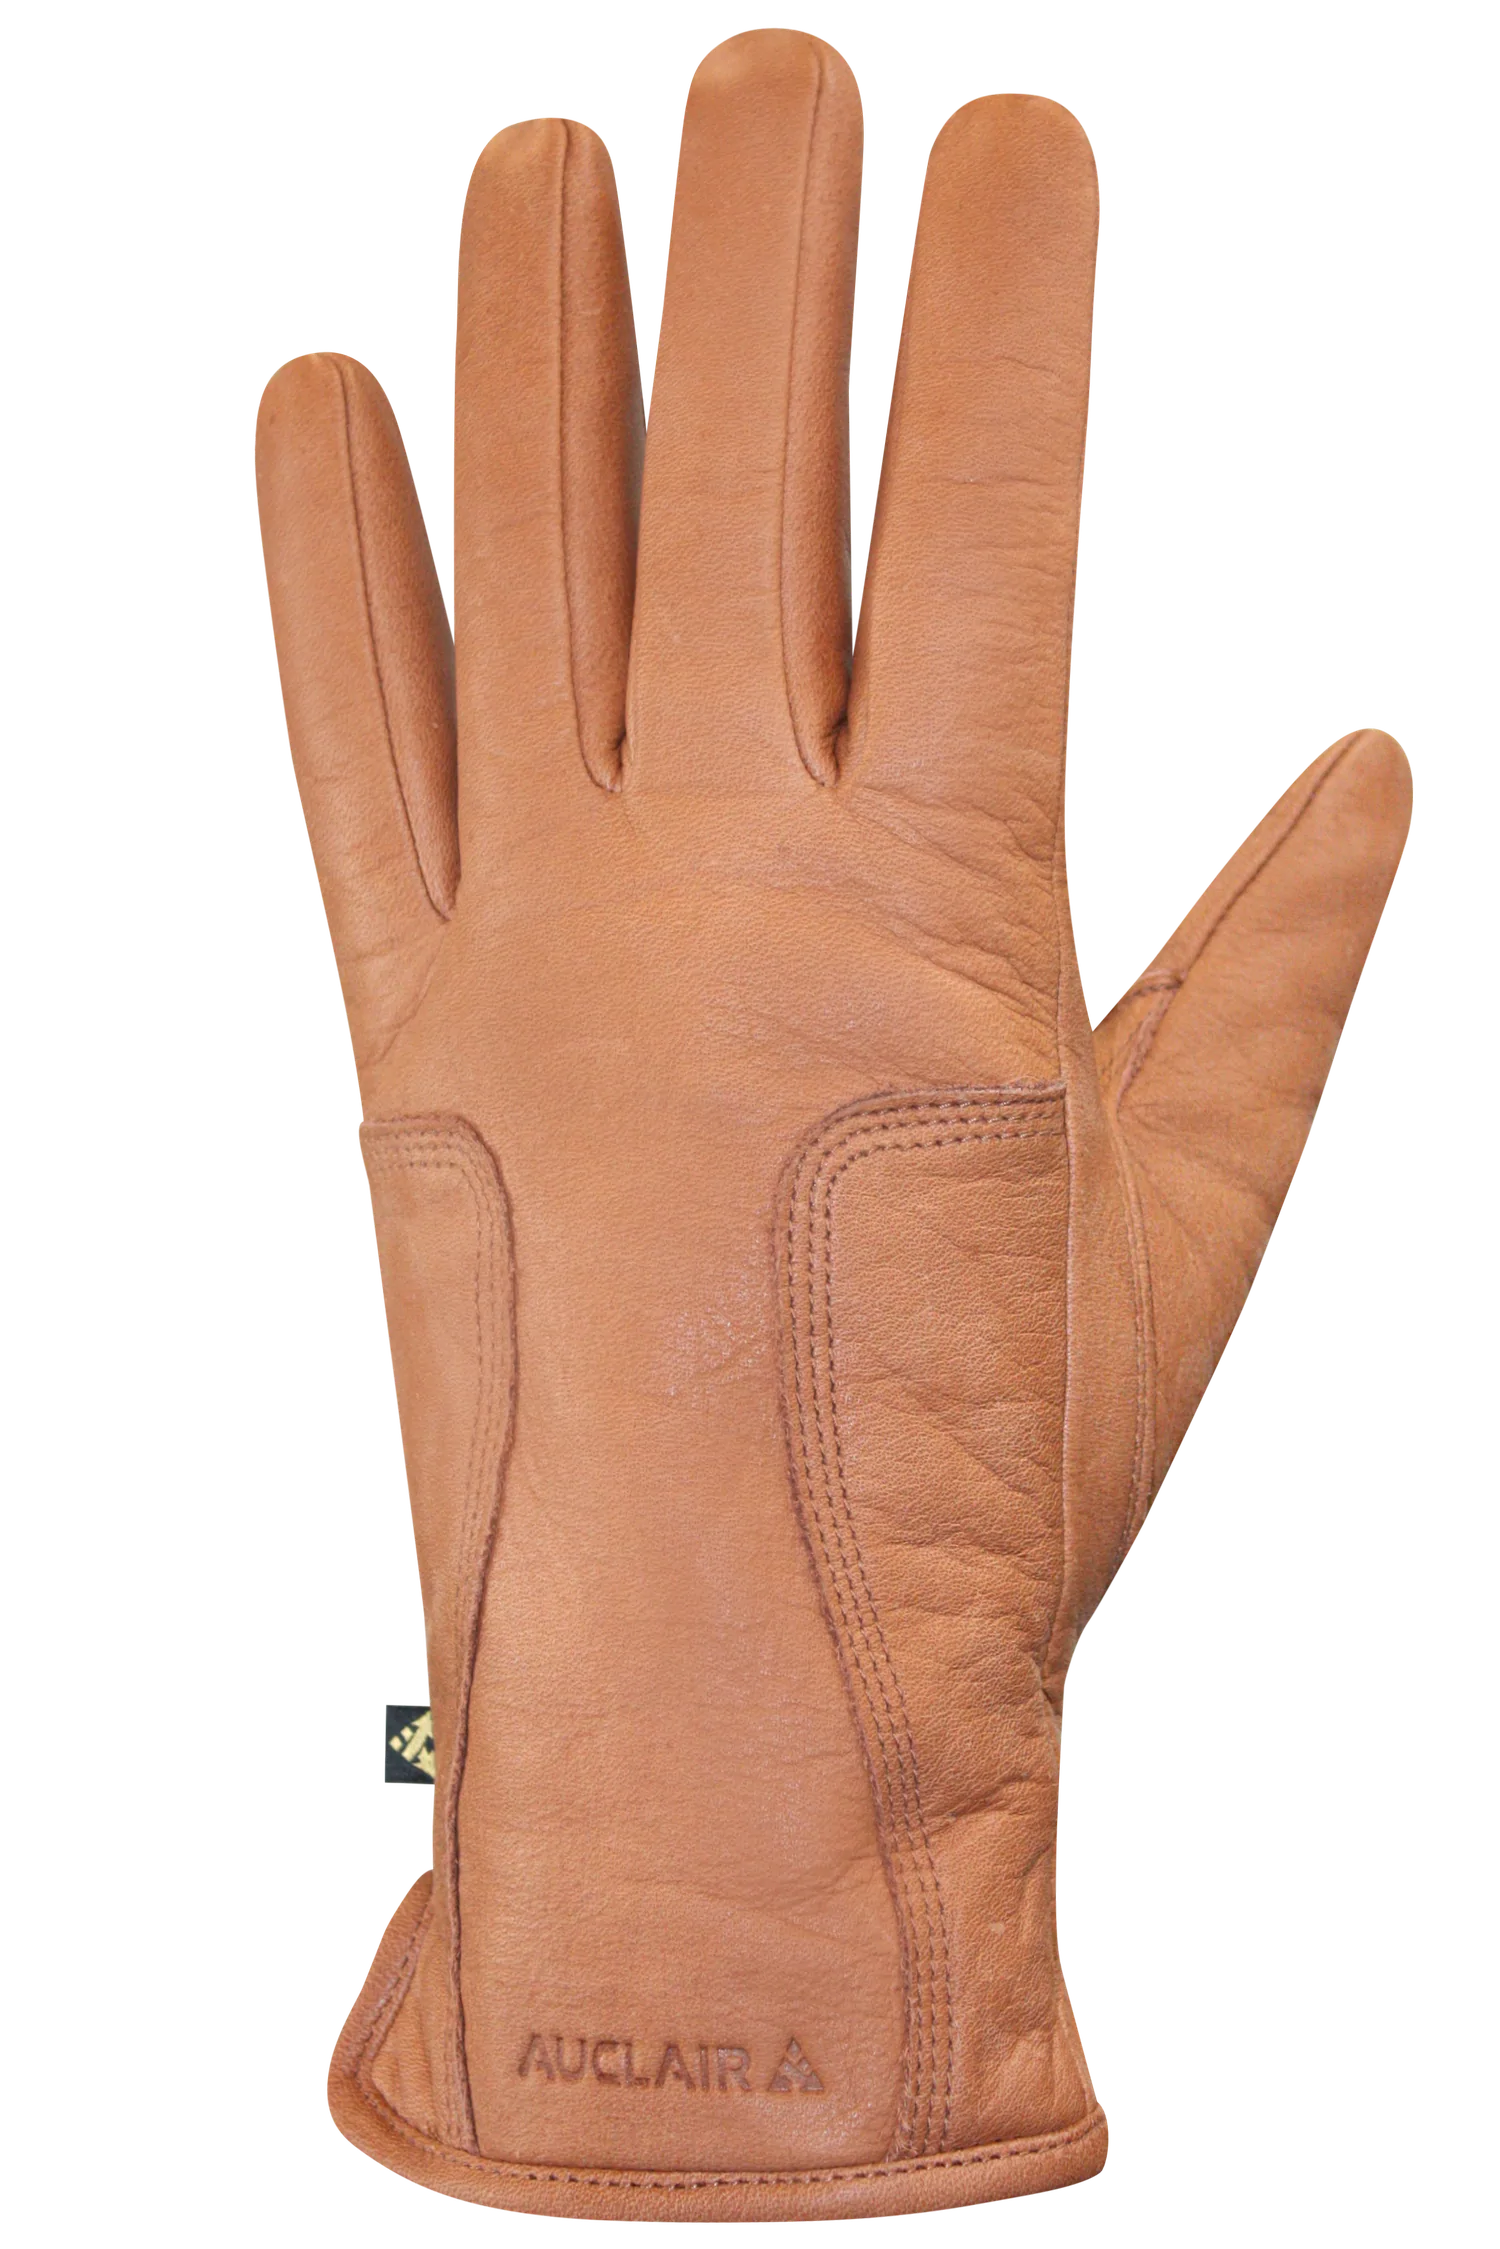 Auclair Women's Kenza Glove